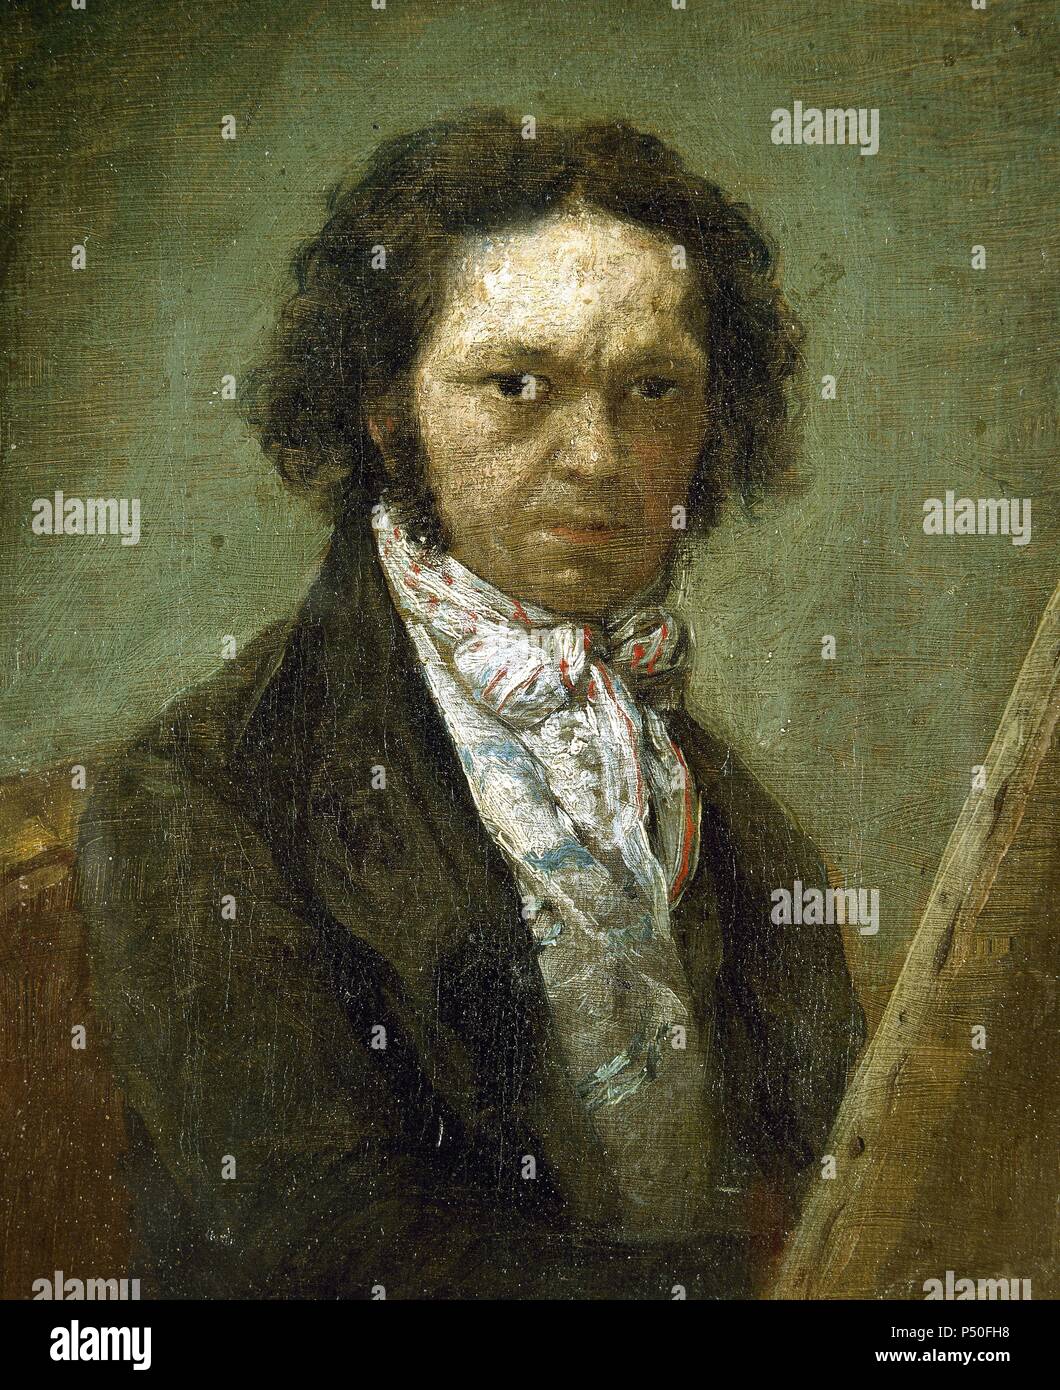 Francisco de Goya (1746-1828). Peintre romantique espagnol. L'auto-portrait. Collection privée. Madrid. L'Espagne. Banque D'Images